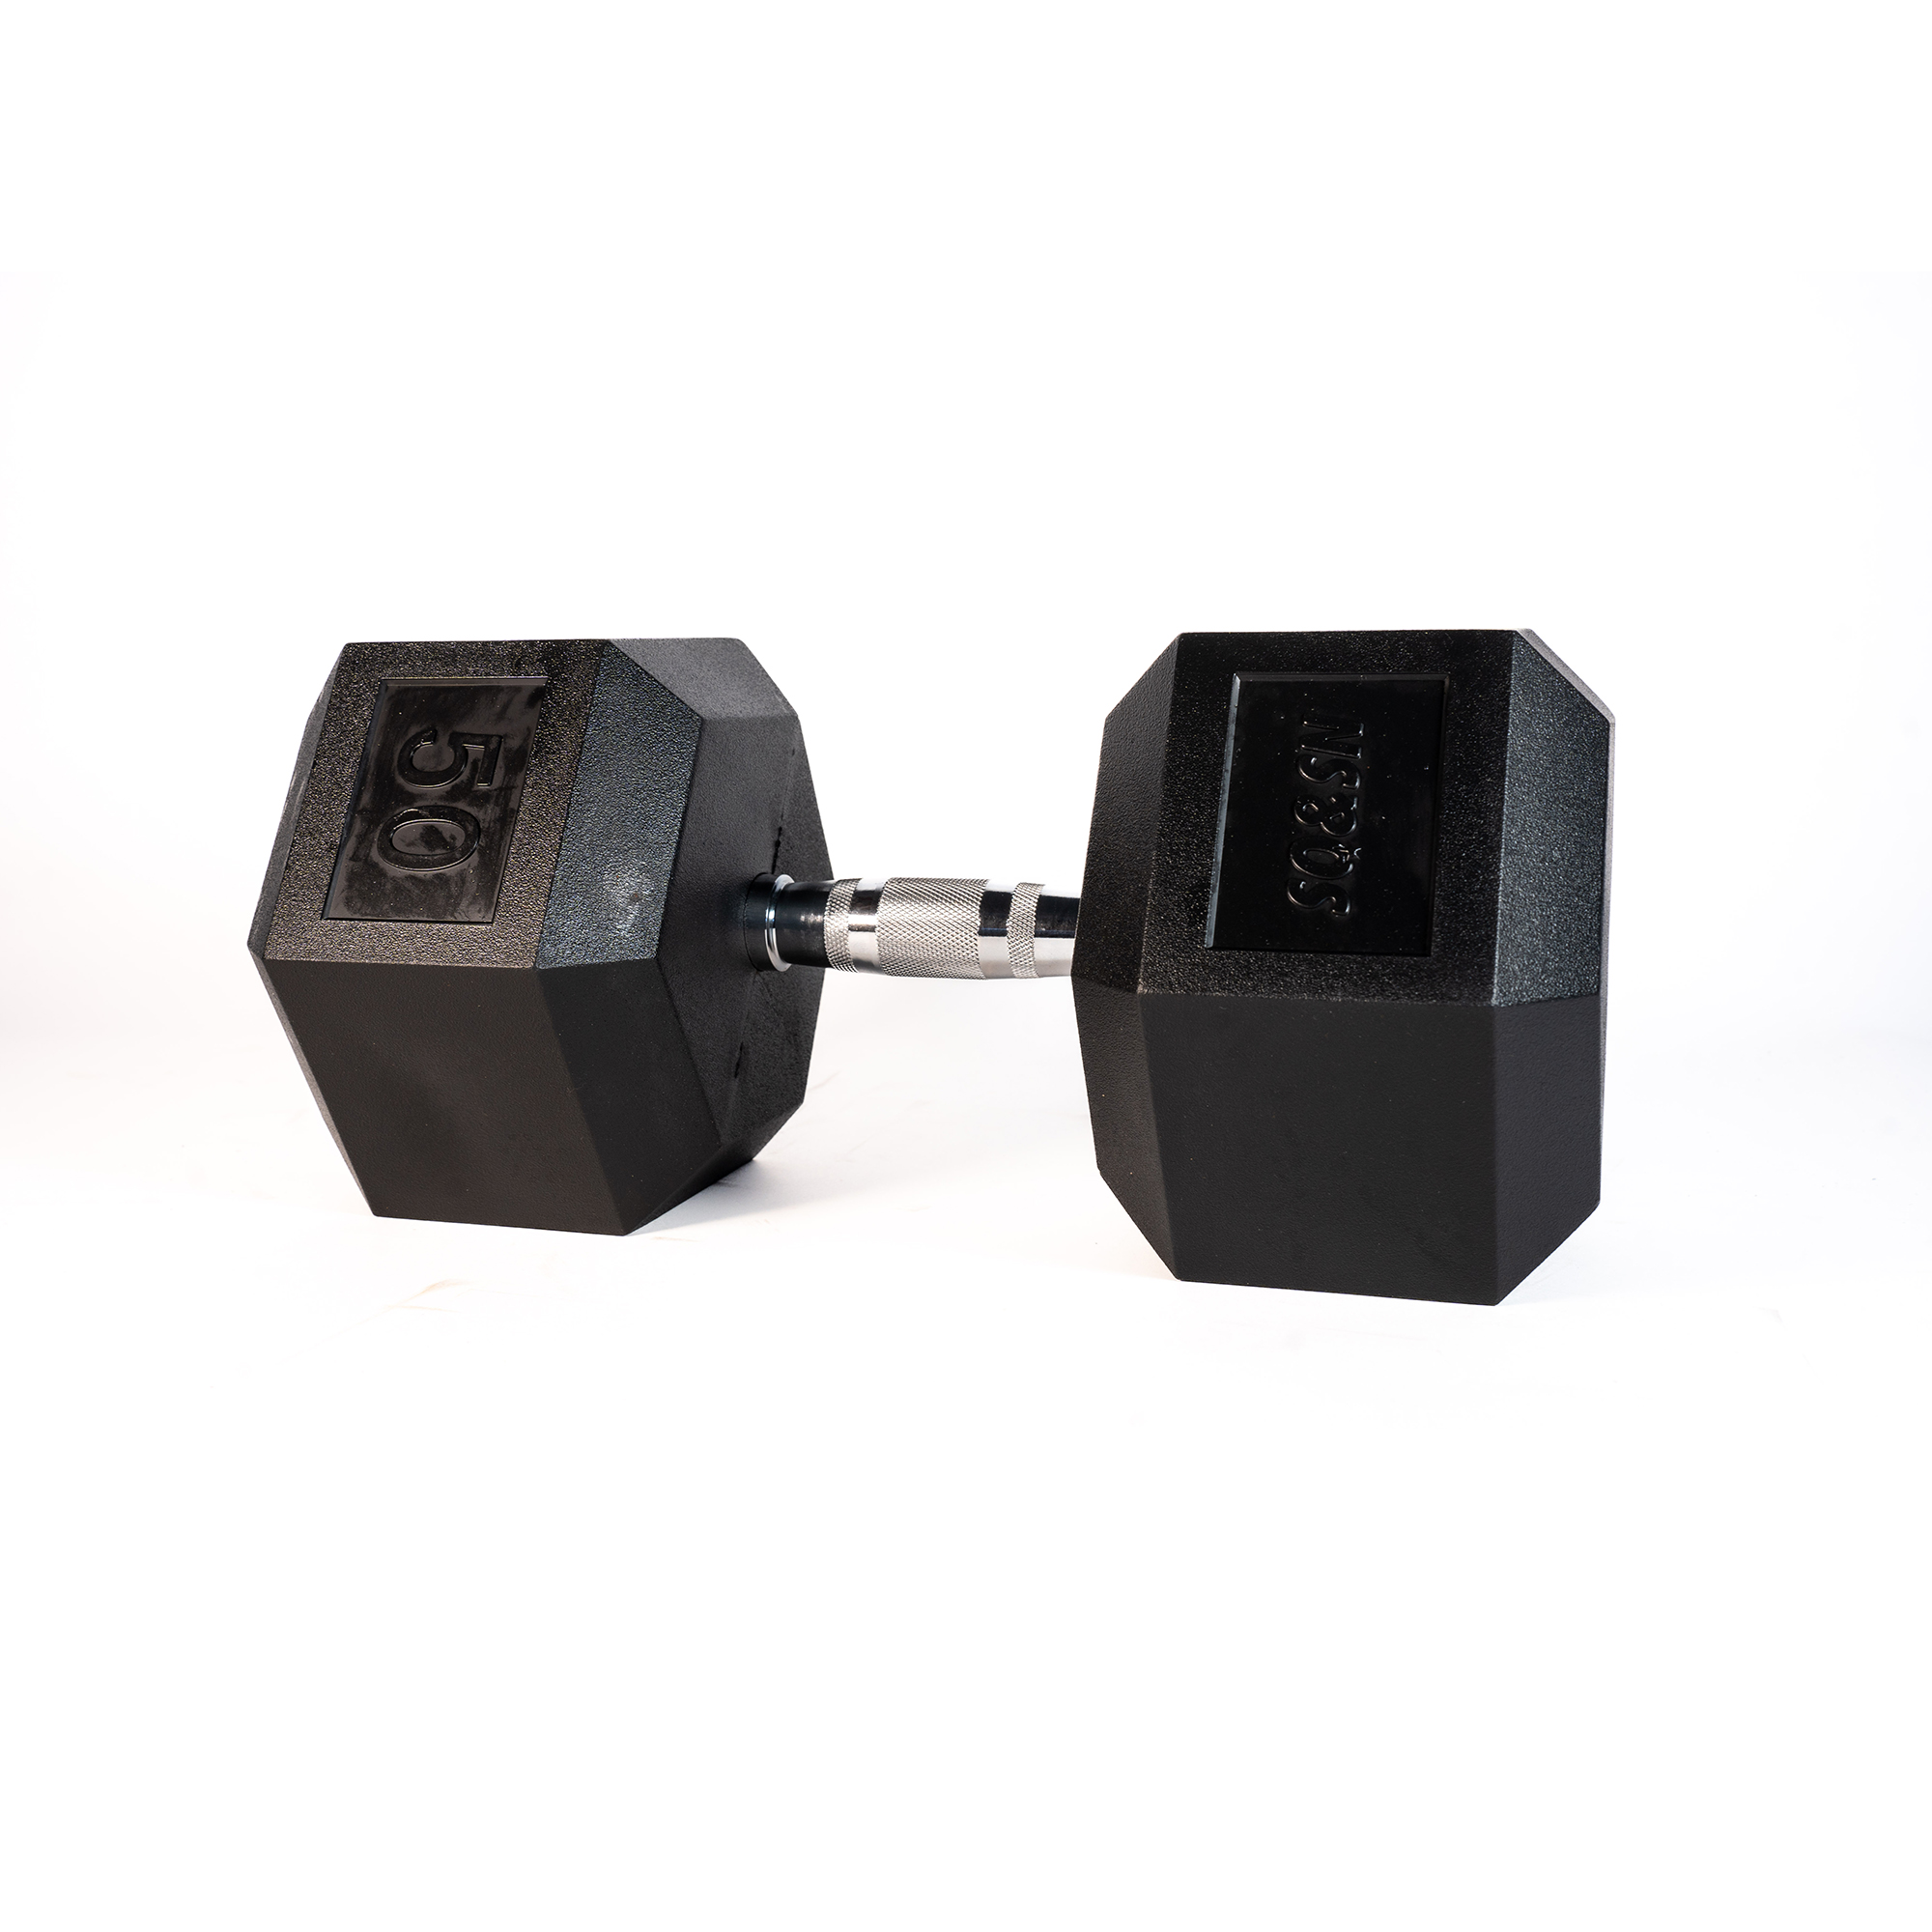 SQ&SN Hexagon Håndvægt (50 kg) med forkromet greb. Udstyr til crossfit træning, styrketræning og funktionel træning thumbnail